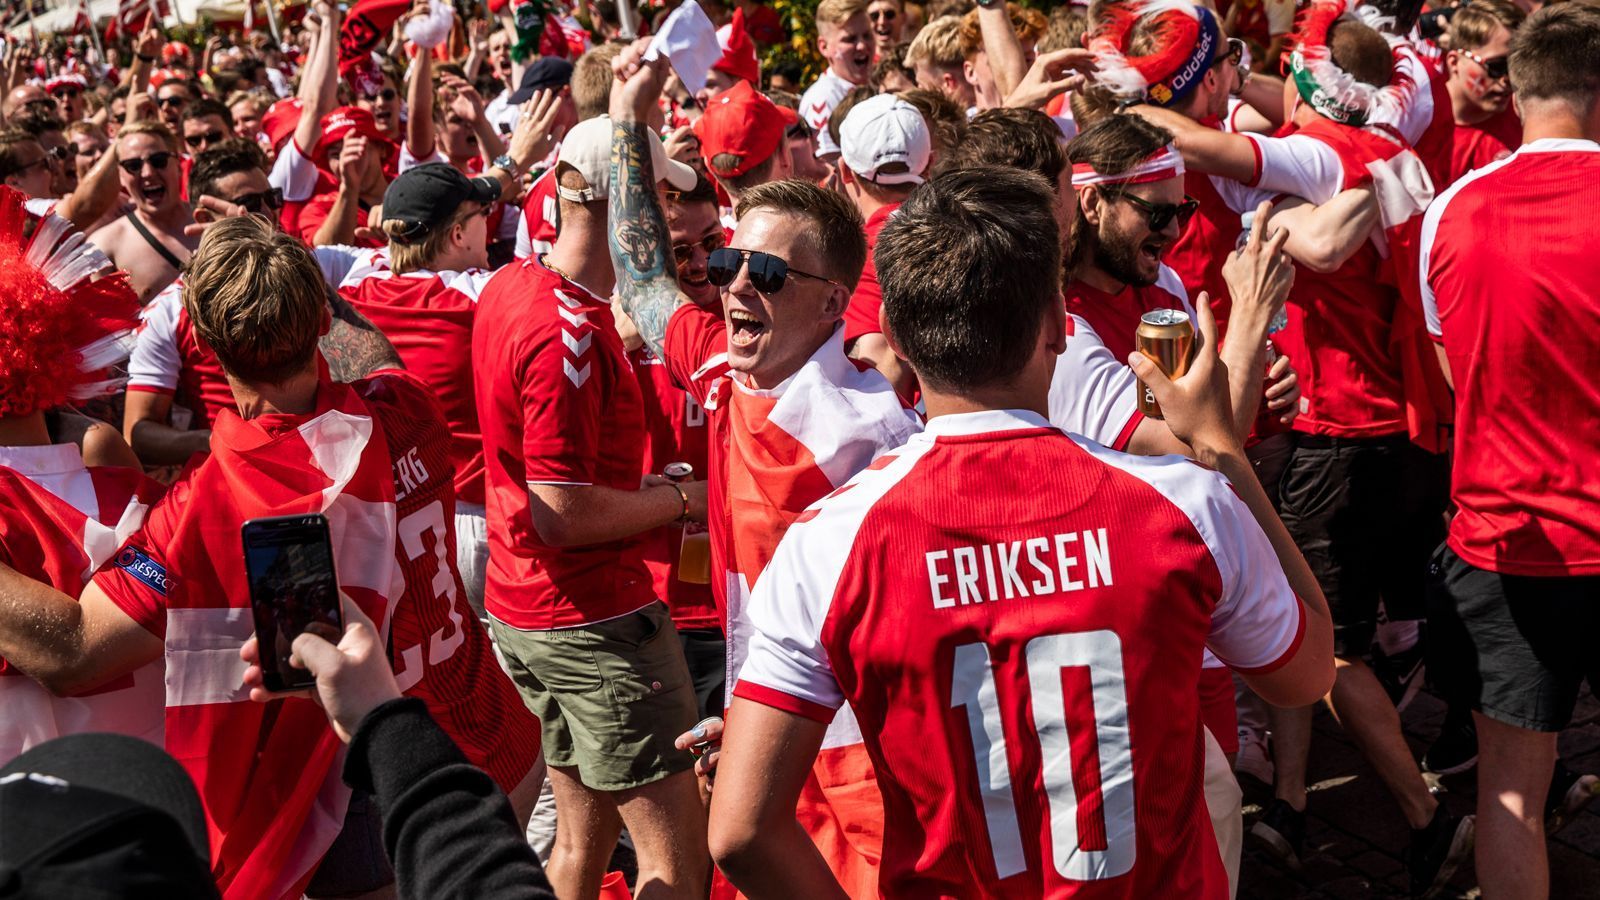 
                <strong>Gute Stimmung</strong><br>
                Christian Eriksen lebt - das war am Samstag die schönste und wichtigste Nachricht des Spiels gegen Finnland. Deshalb sind die Fans auch am Donnerstag vor dem Spiel gegen Belgien in Feierstimmung.
              